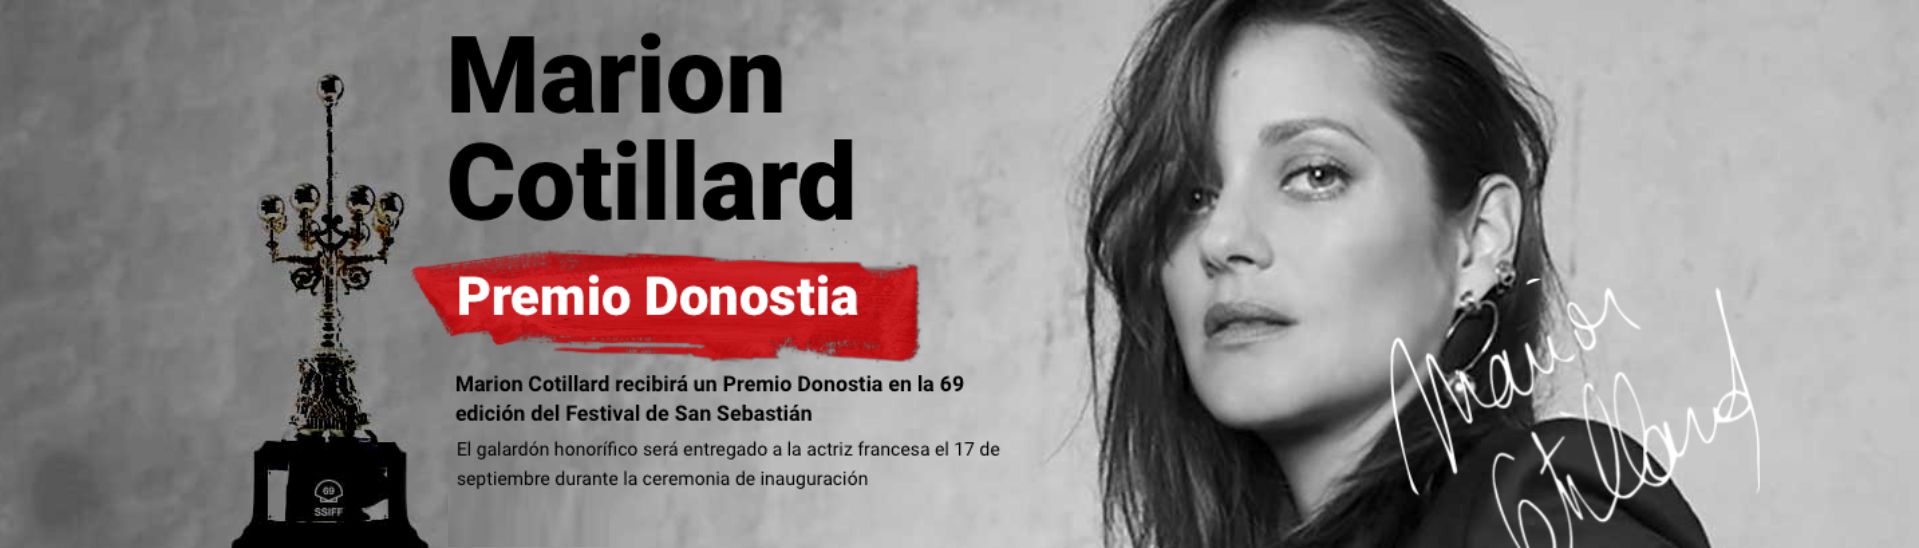 Marion Cotillard premio Donostia 2021